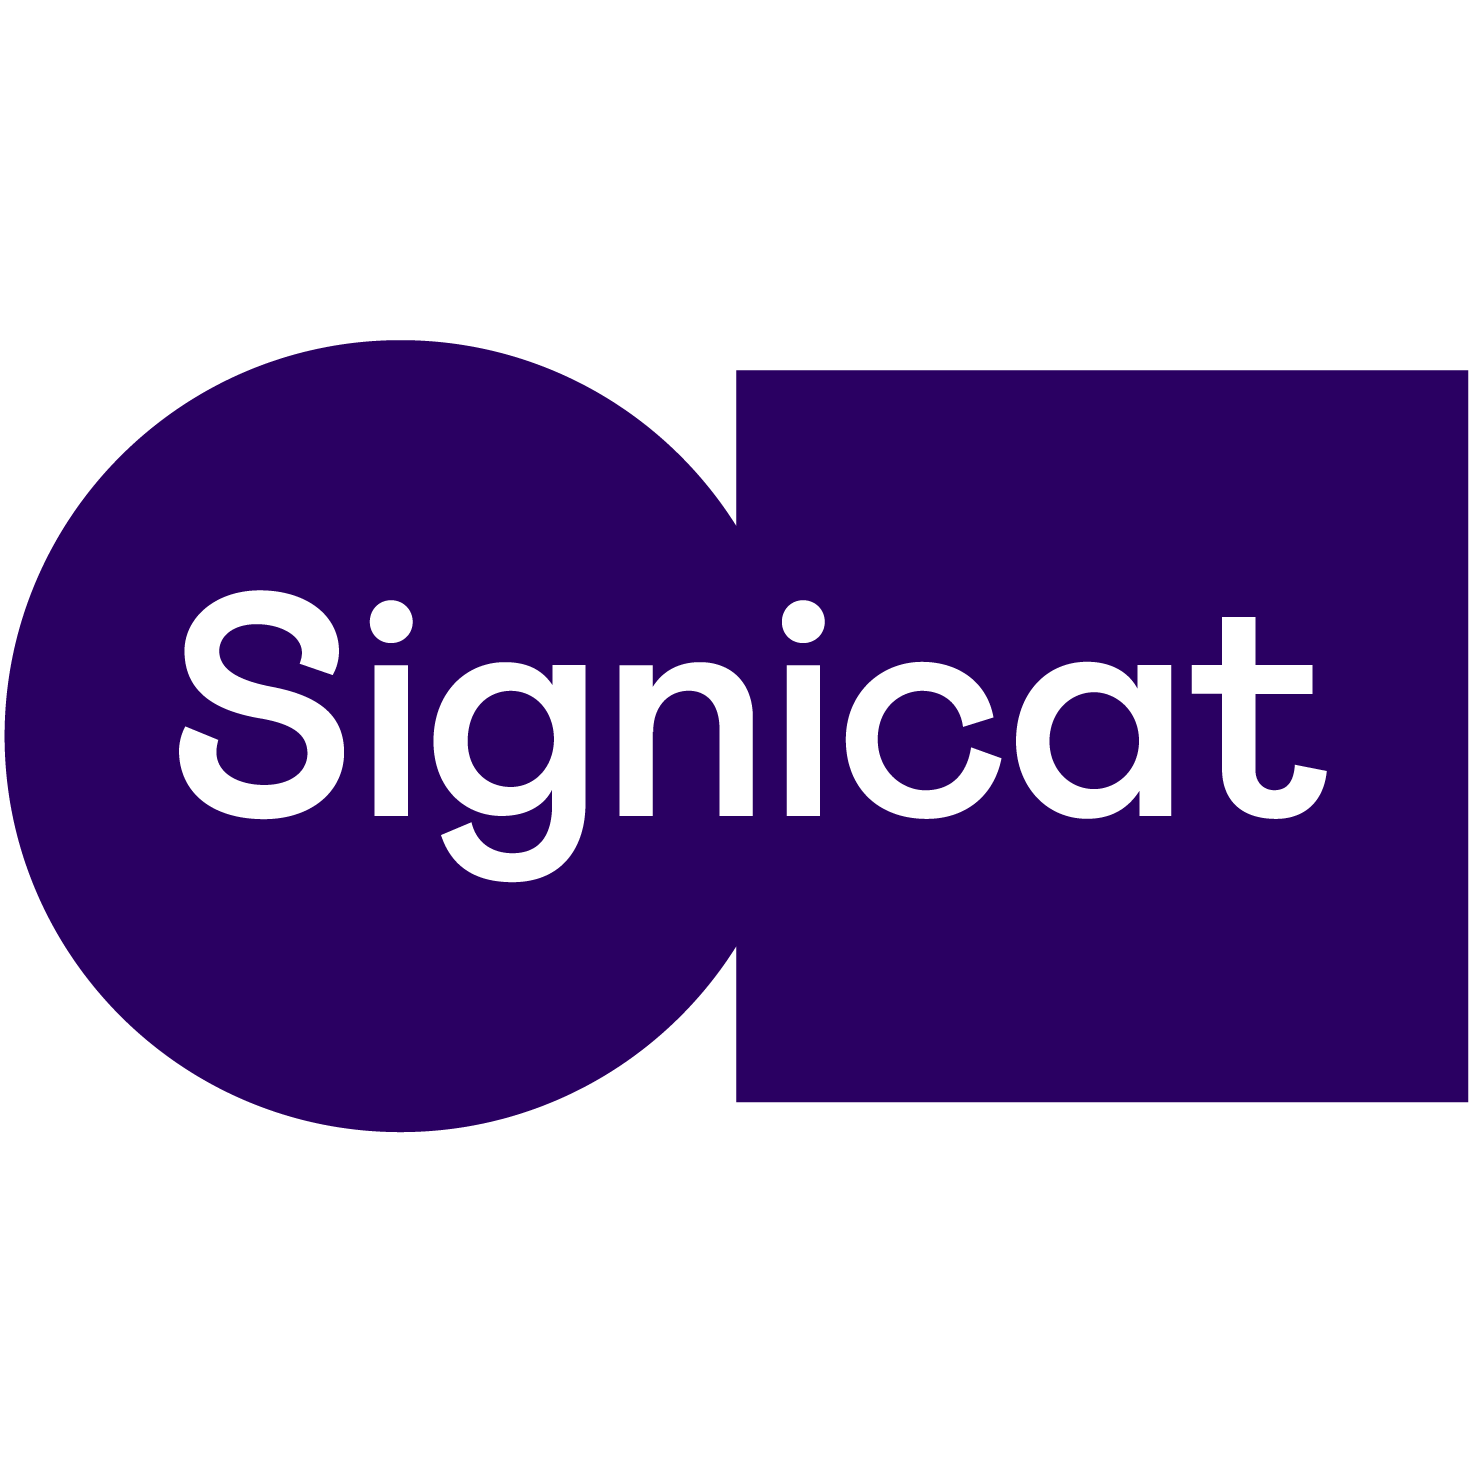 transparent-Signicat-logo